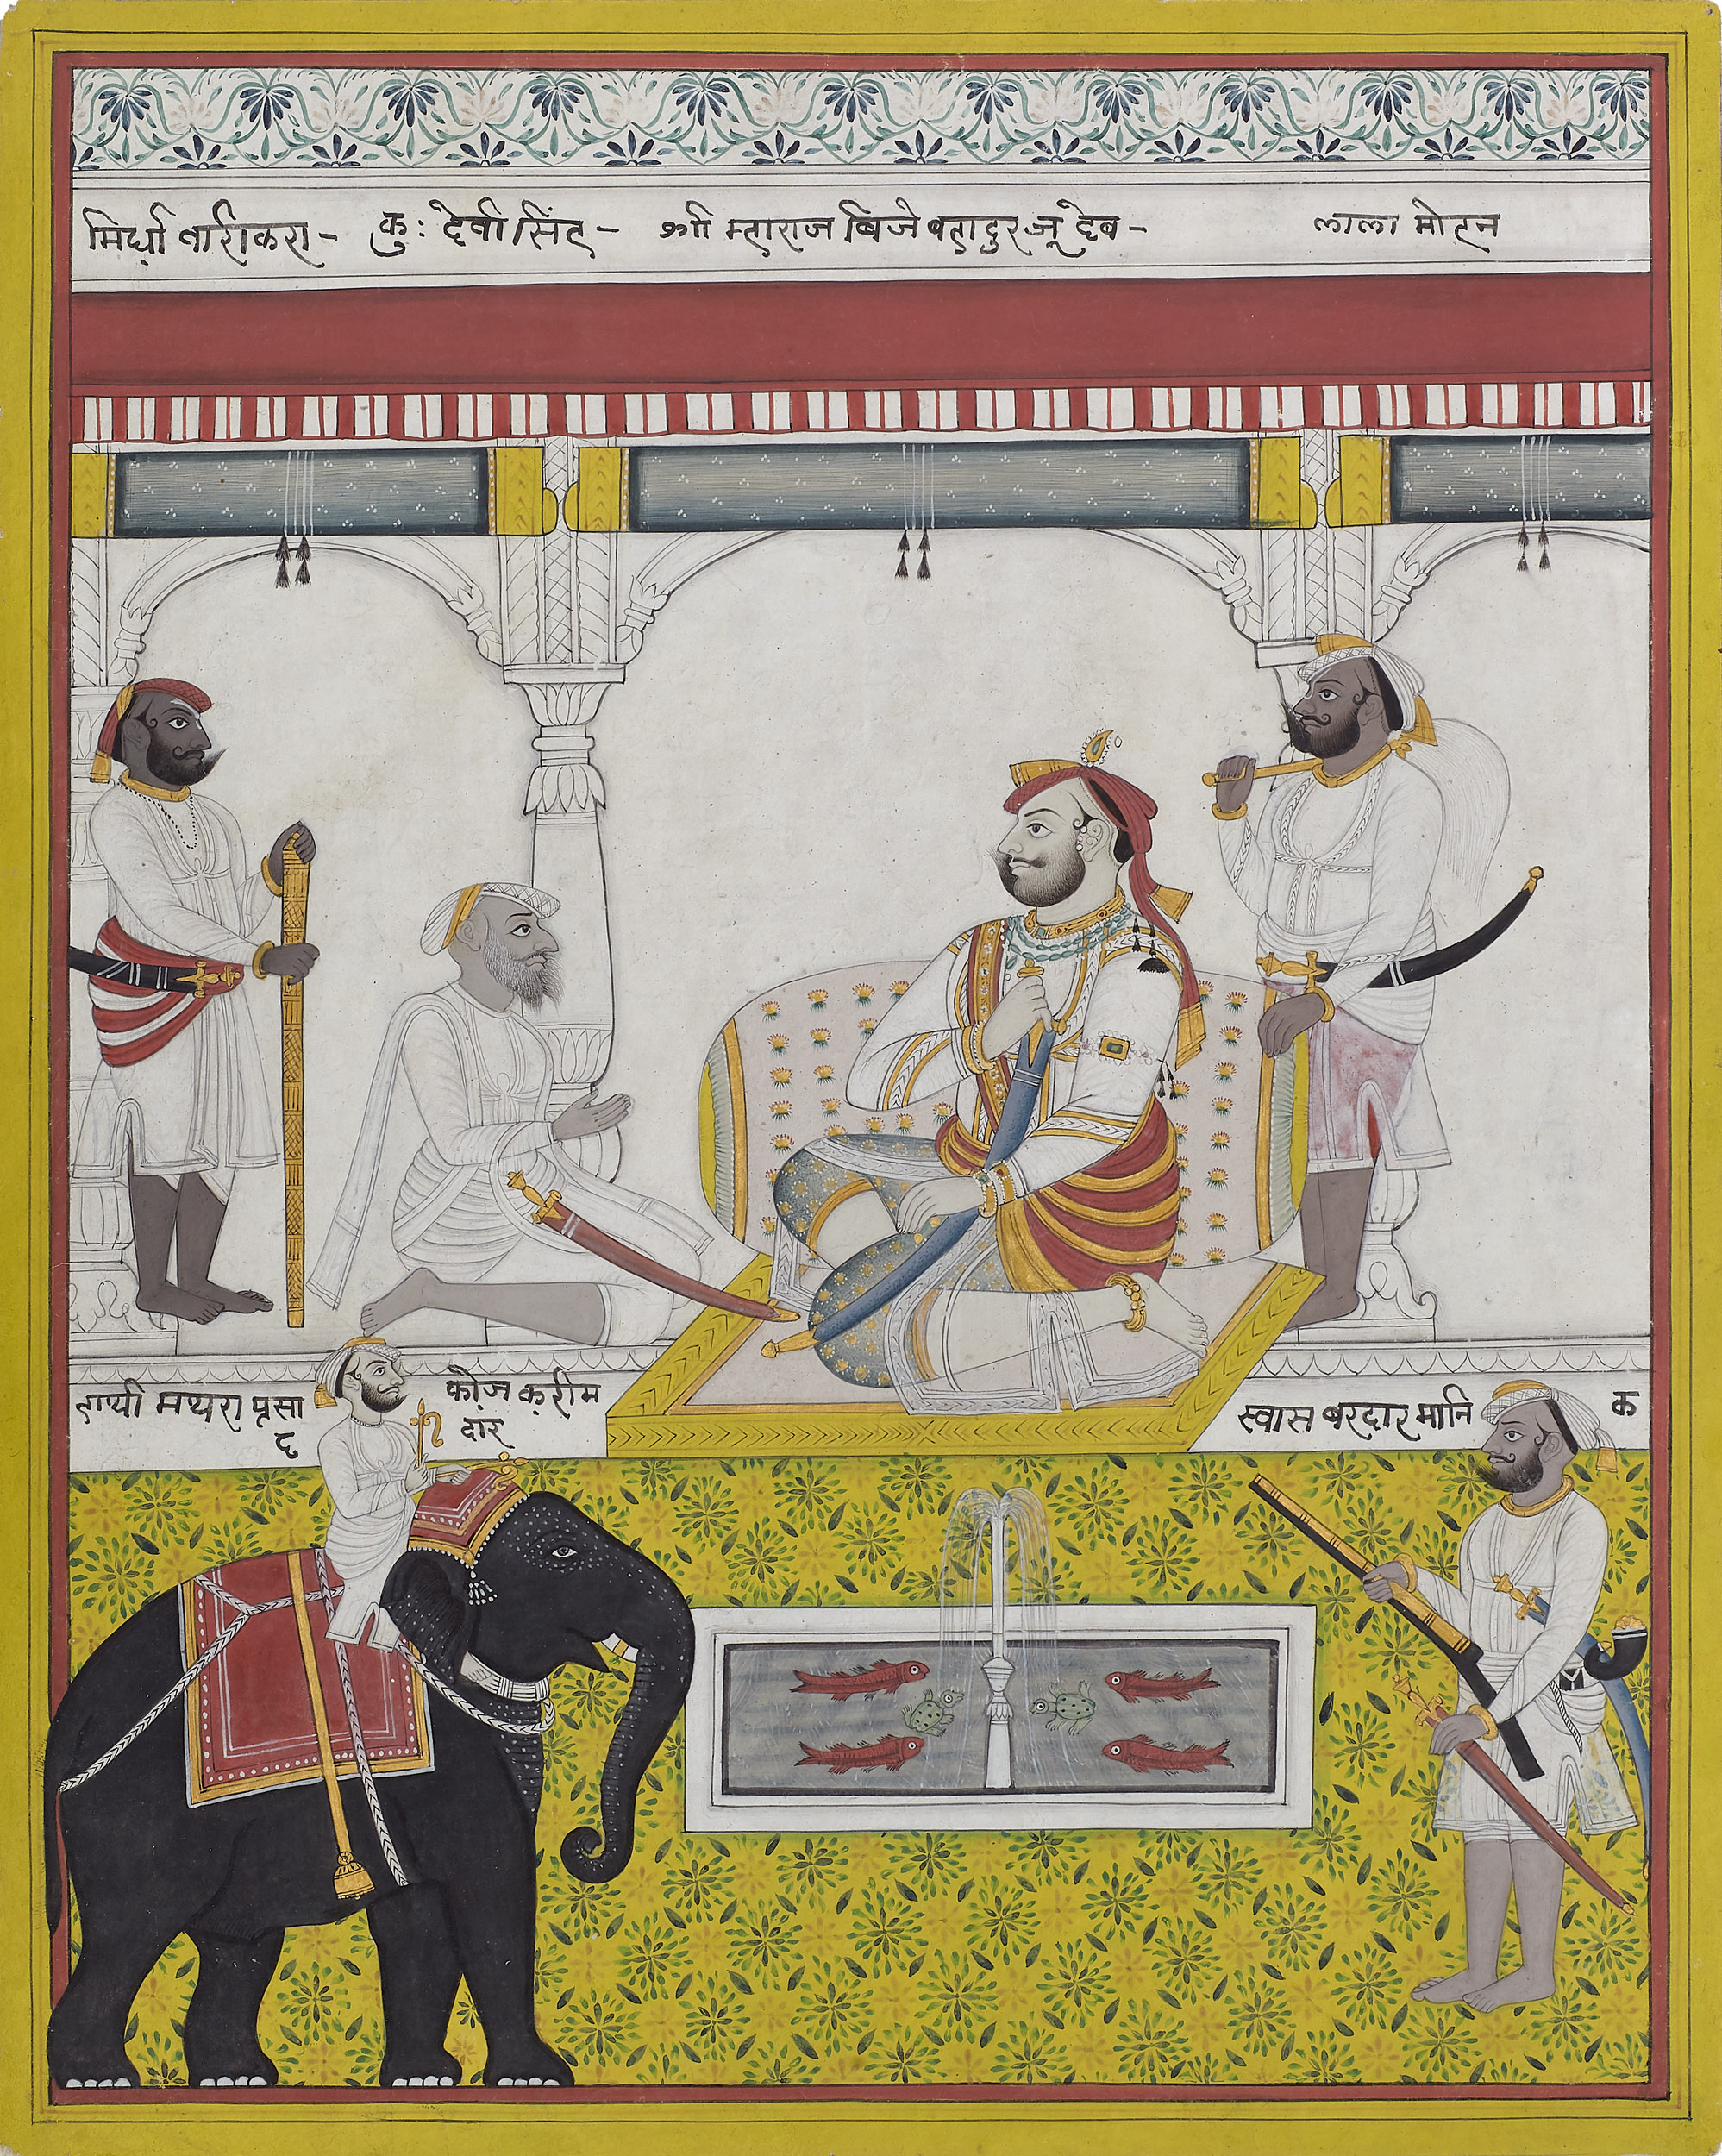 Raja Vijay Bahadur Singh Ju Deo